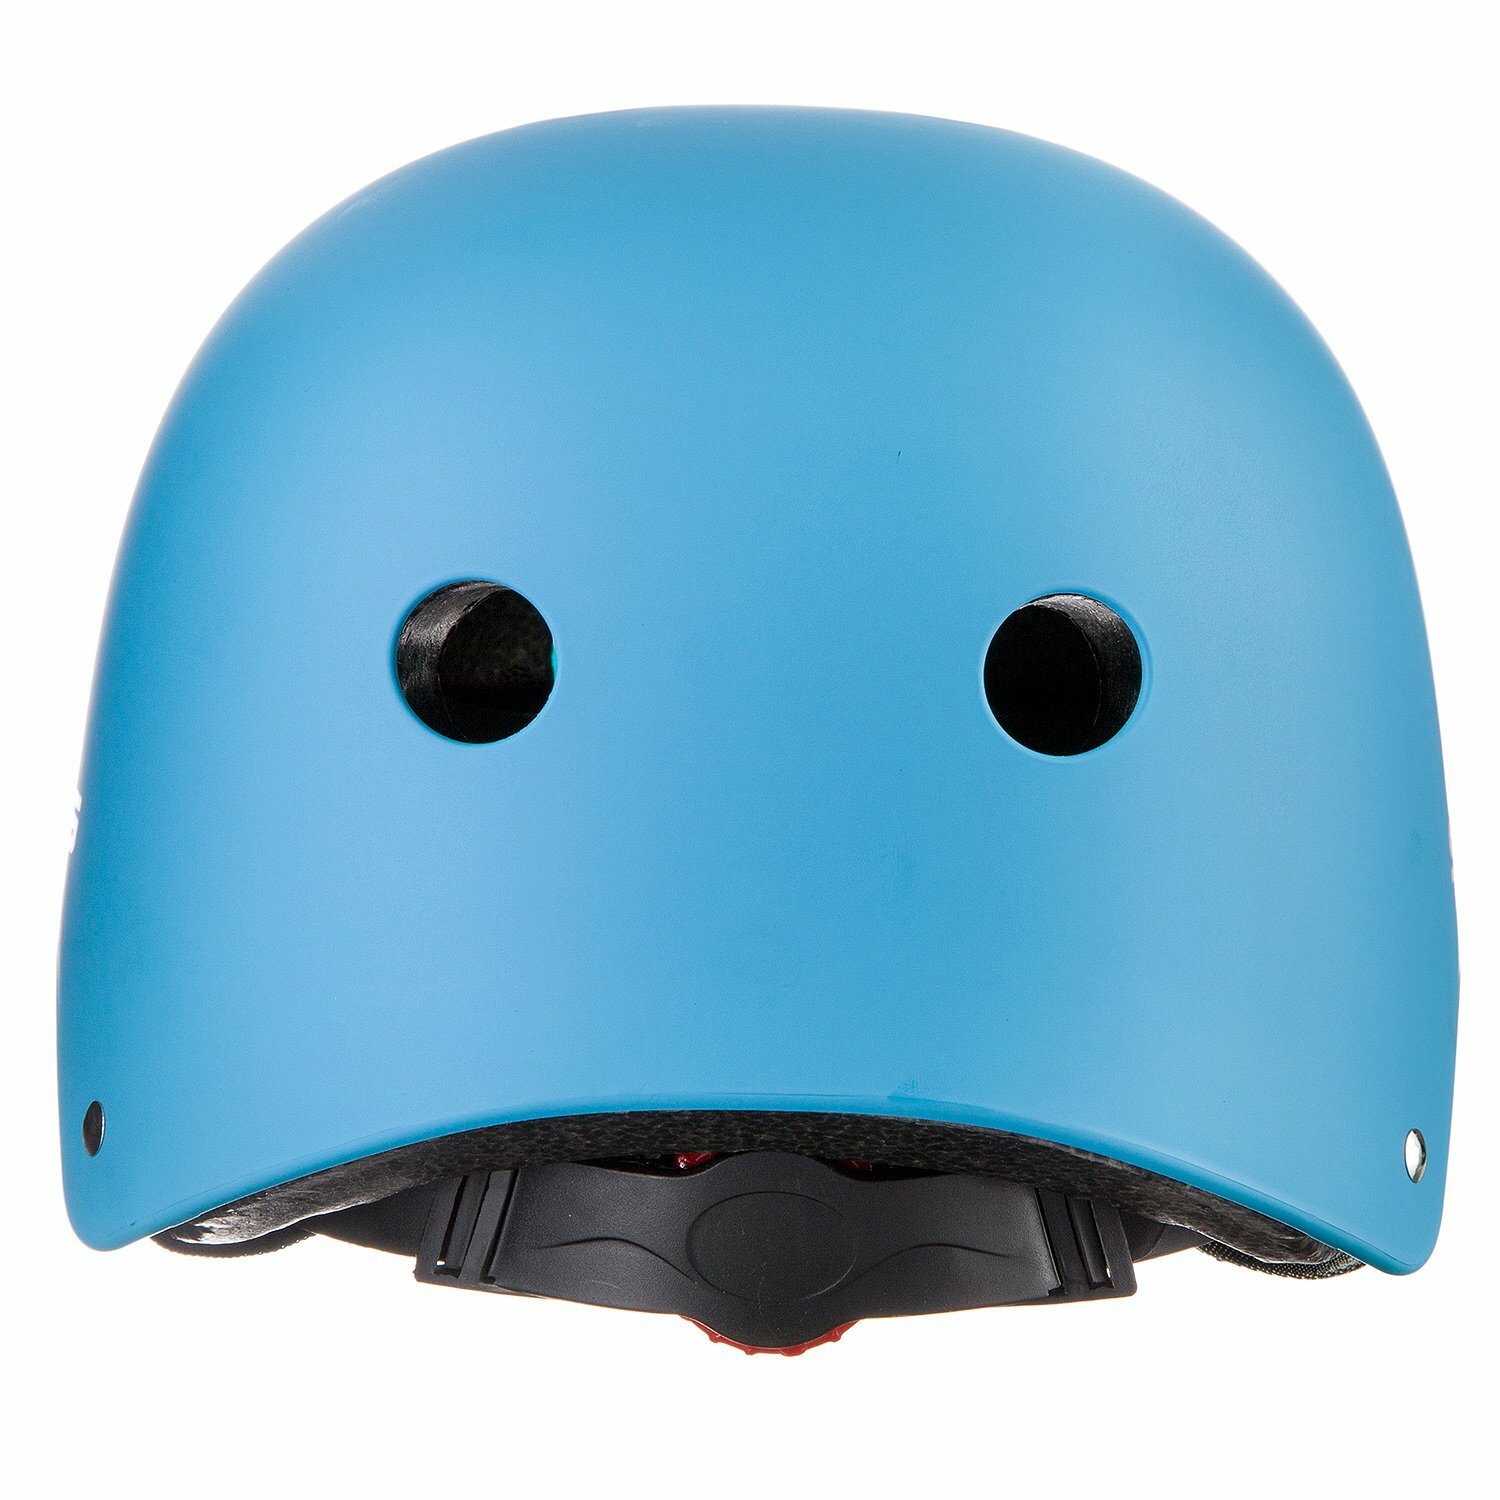 Шлем STG , модель MTV12, размер L(58-61)cm синий, с фикс застежкой.